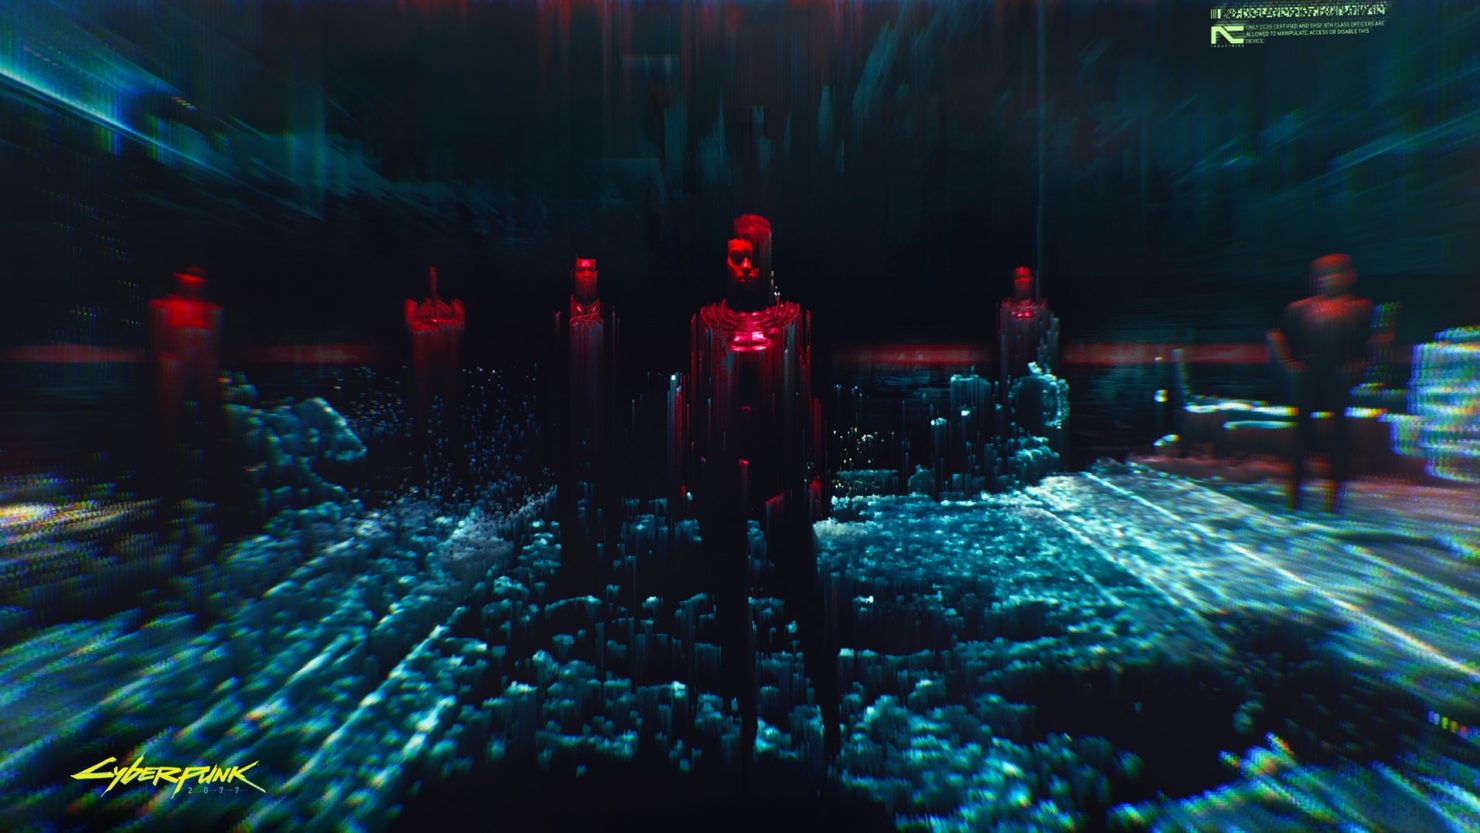 Cyberpunk 2077 tworzone jest na podstawie gry fabularnej Cyberpunk 2020. Jej autor, Mike Pondsmith, współpracuje również ze studiem CD Projekt RED nad tym projektem.